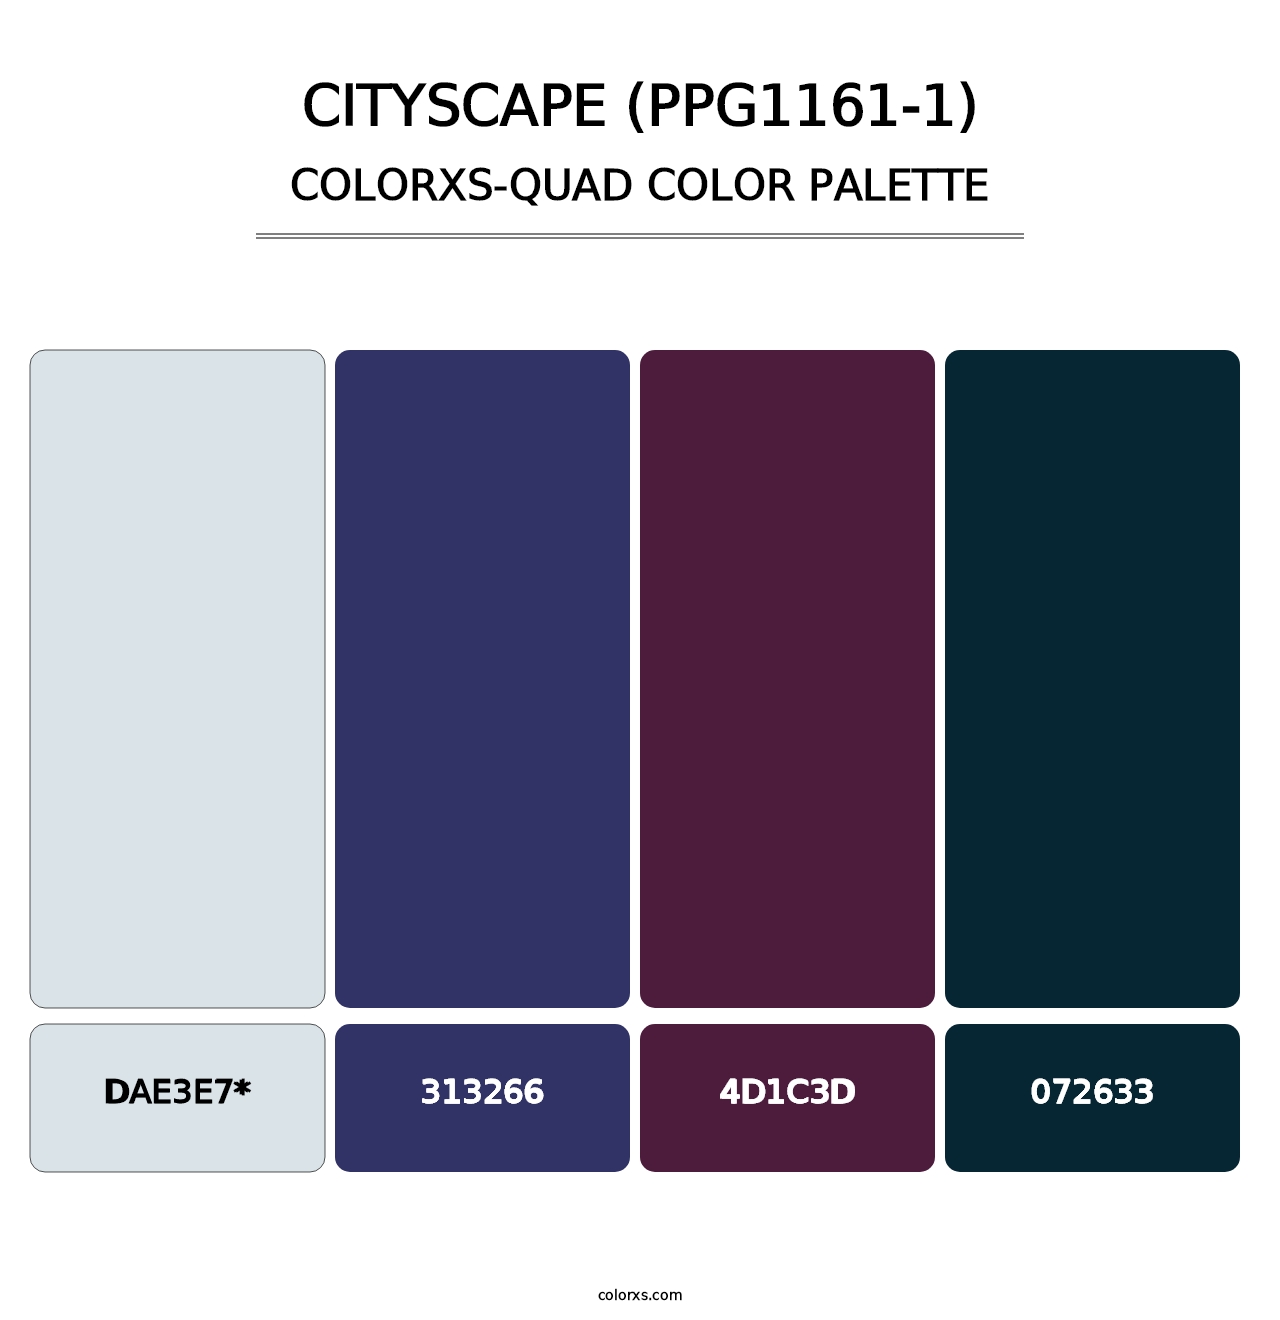 Cityscape (PPG1161-1) - Colorxs Quad Palette